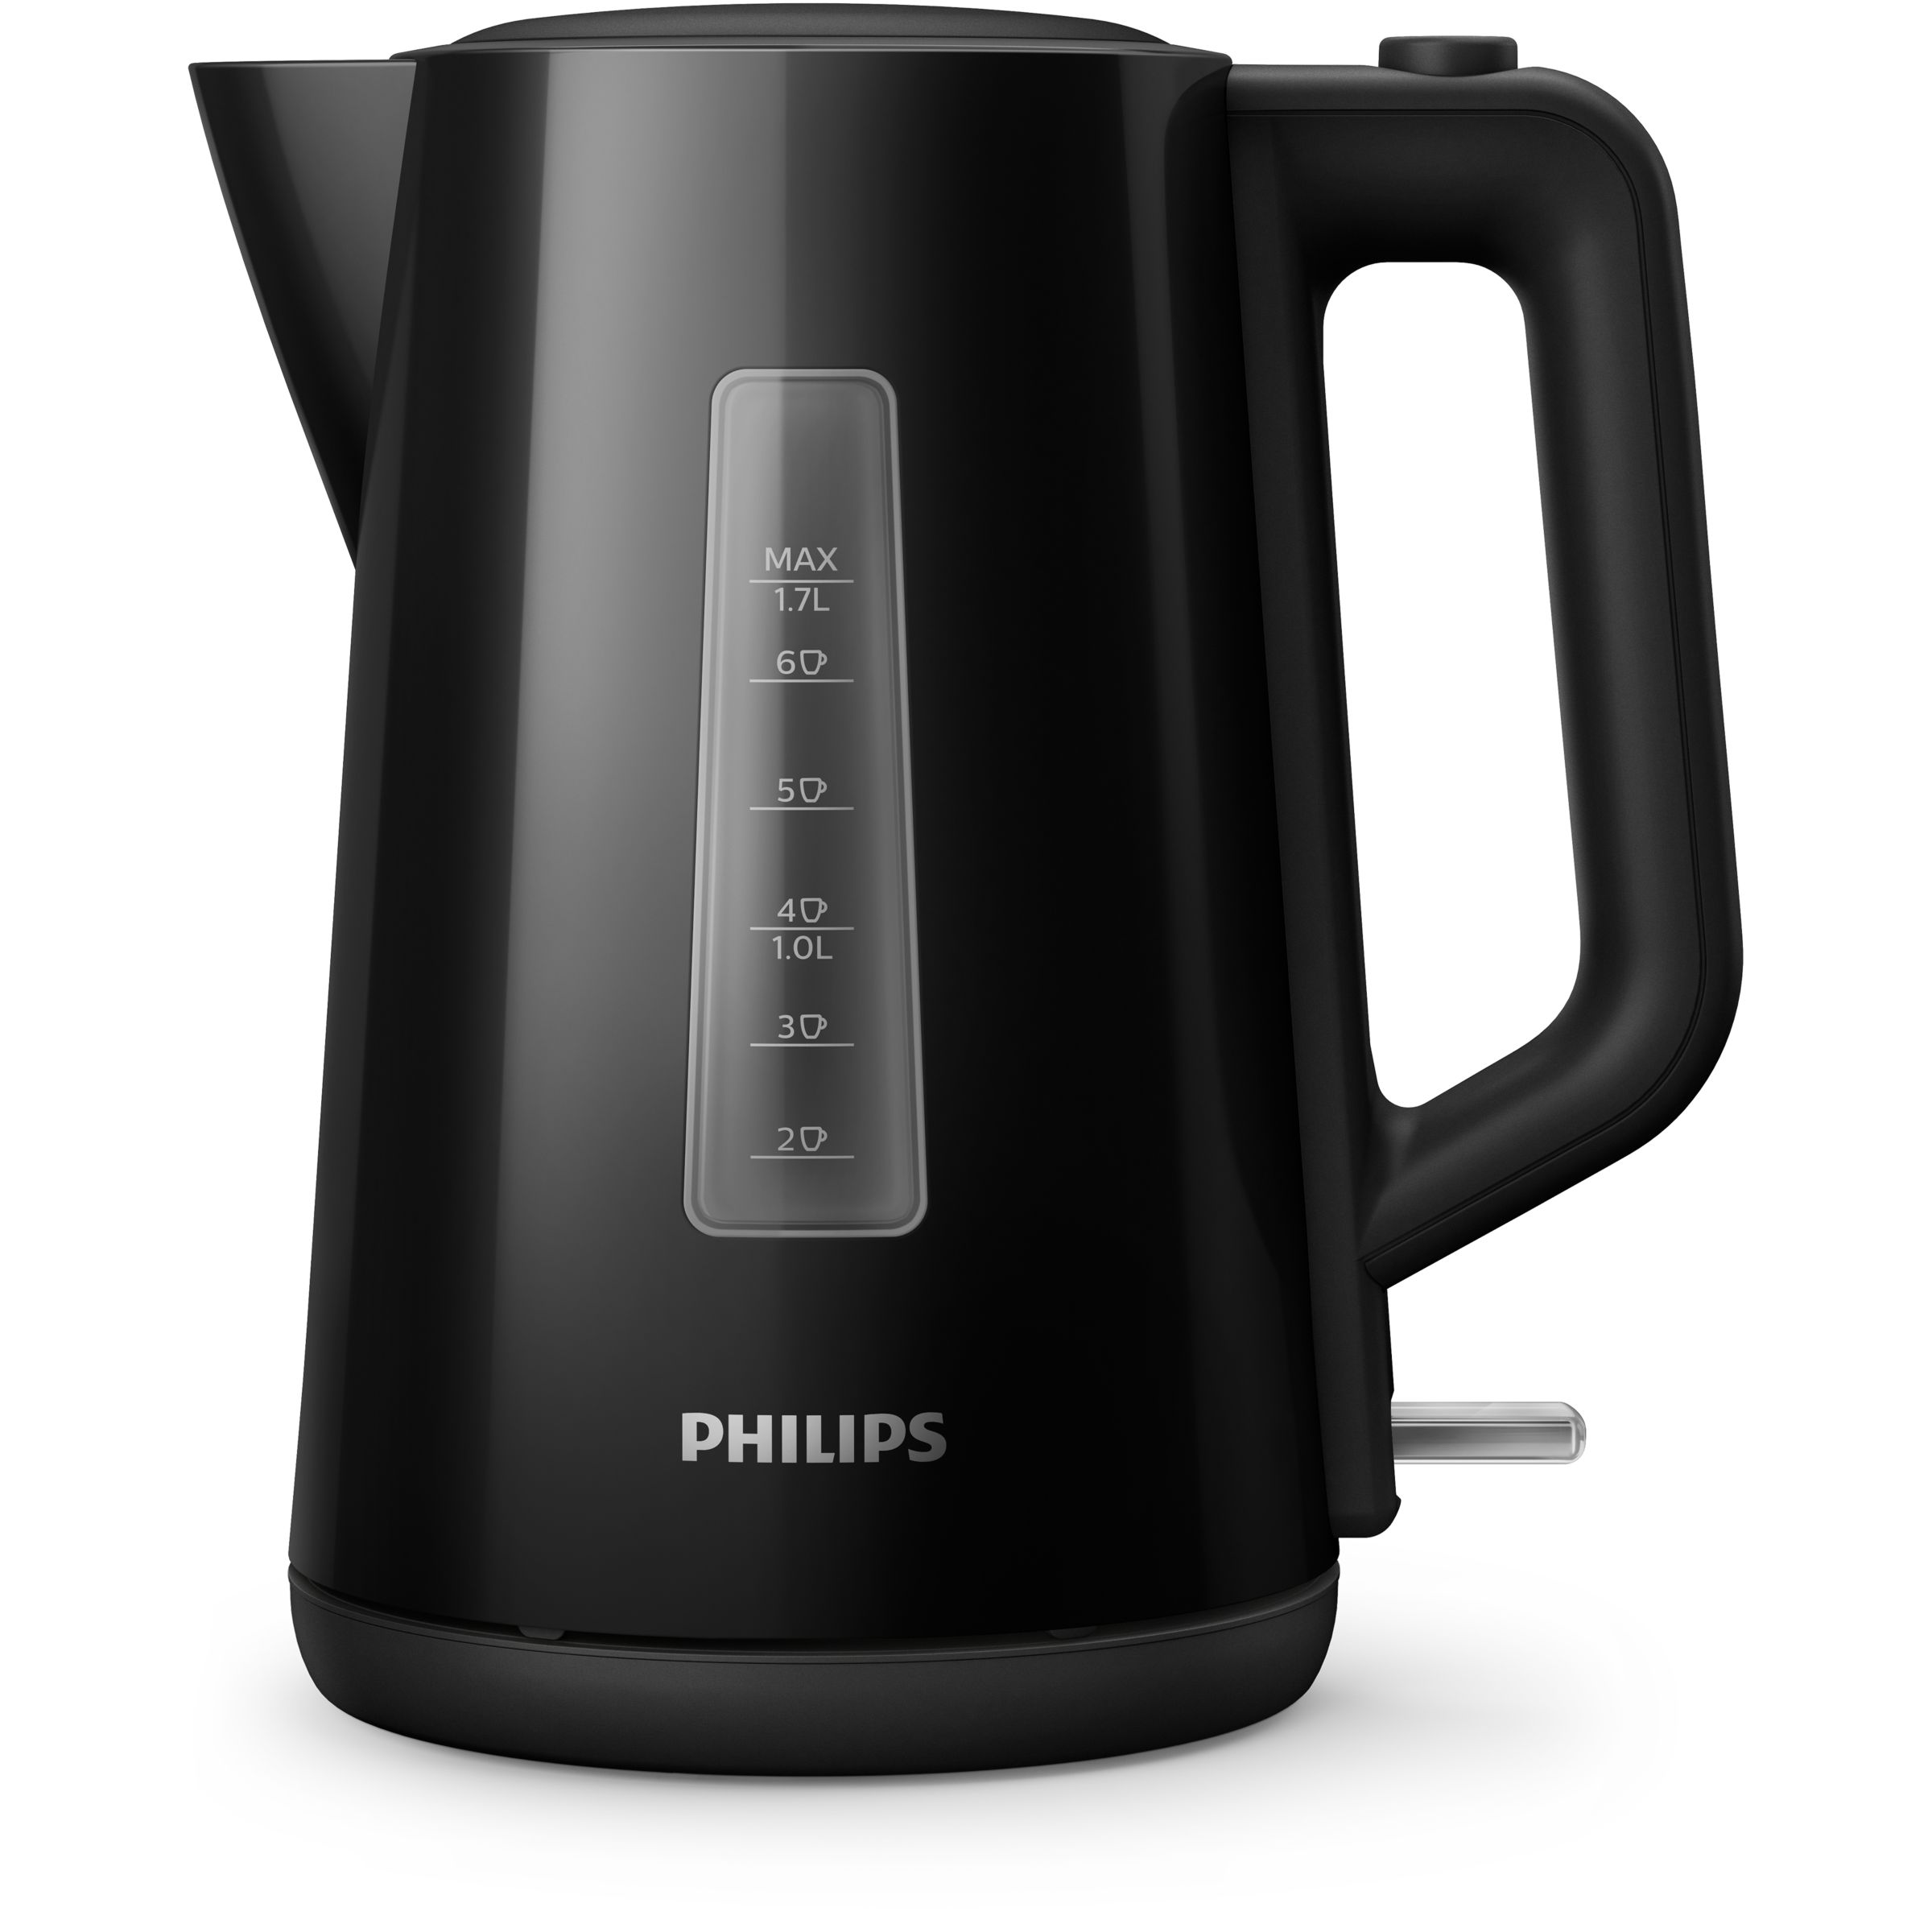 Philips Series 3000 - Černá Konvice, Rodinná Velikost 1,7 l - HD9318/20